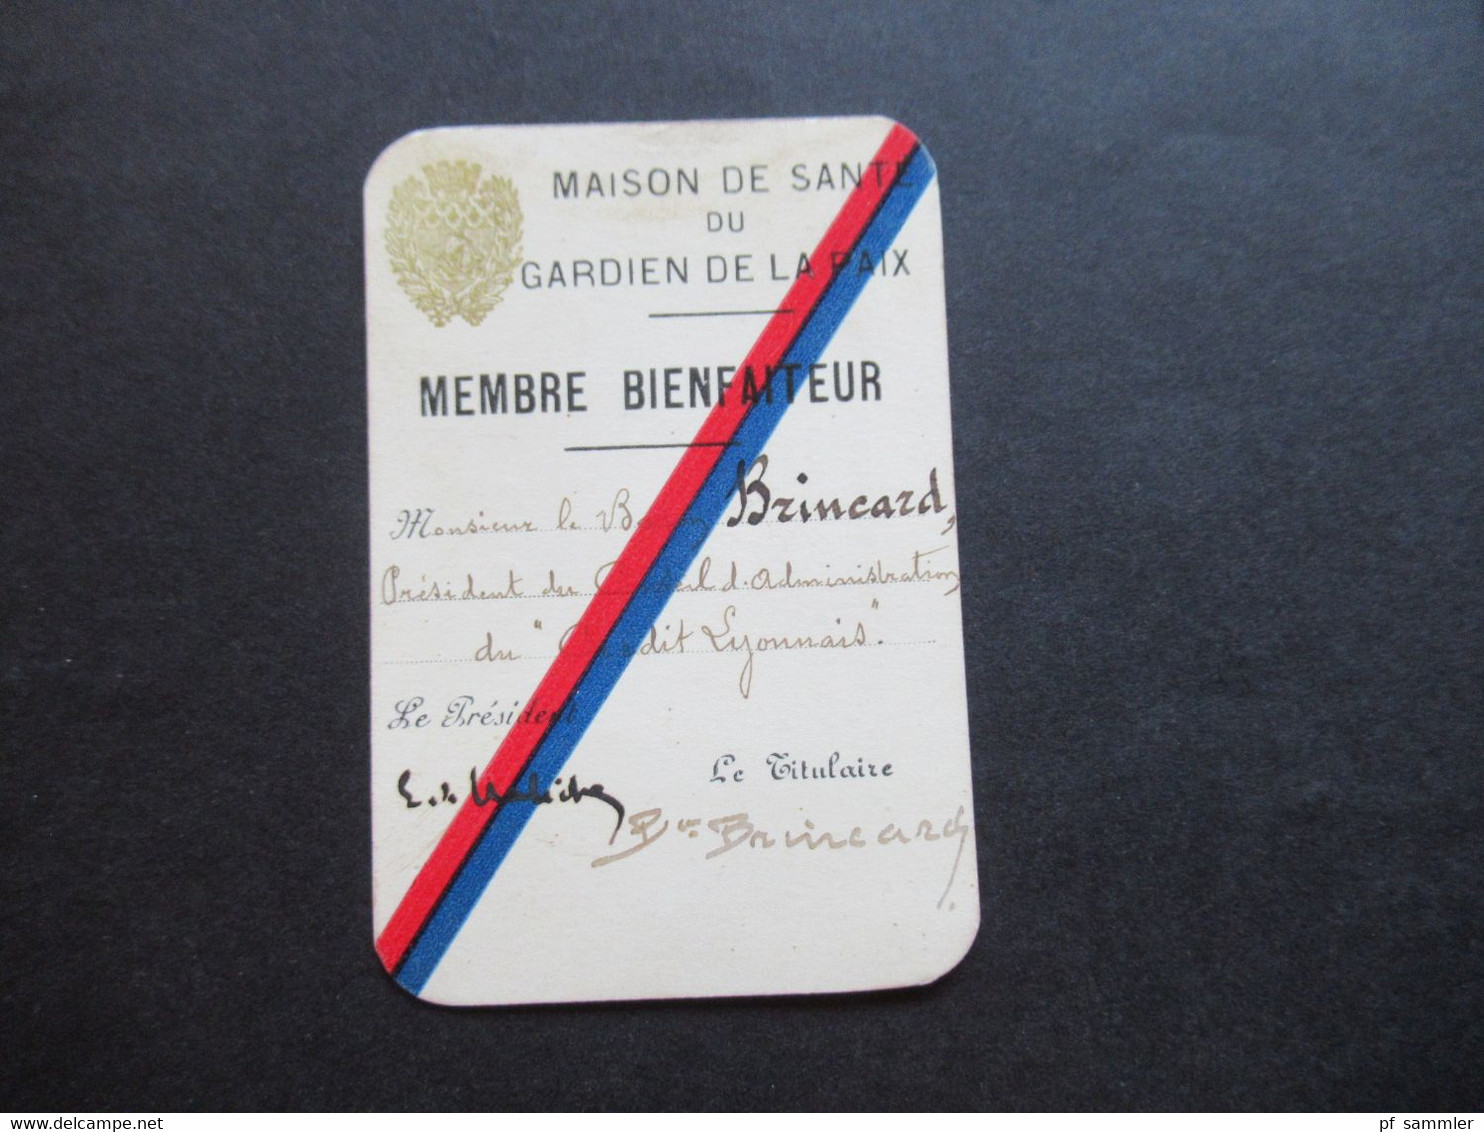 Auto / Voiture Frankreich 1937 Maison de Sante du Gardien de la Paix Membre Bienfaiteur Baron Brincard mit Hülle